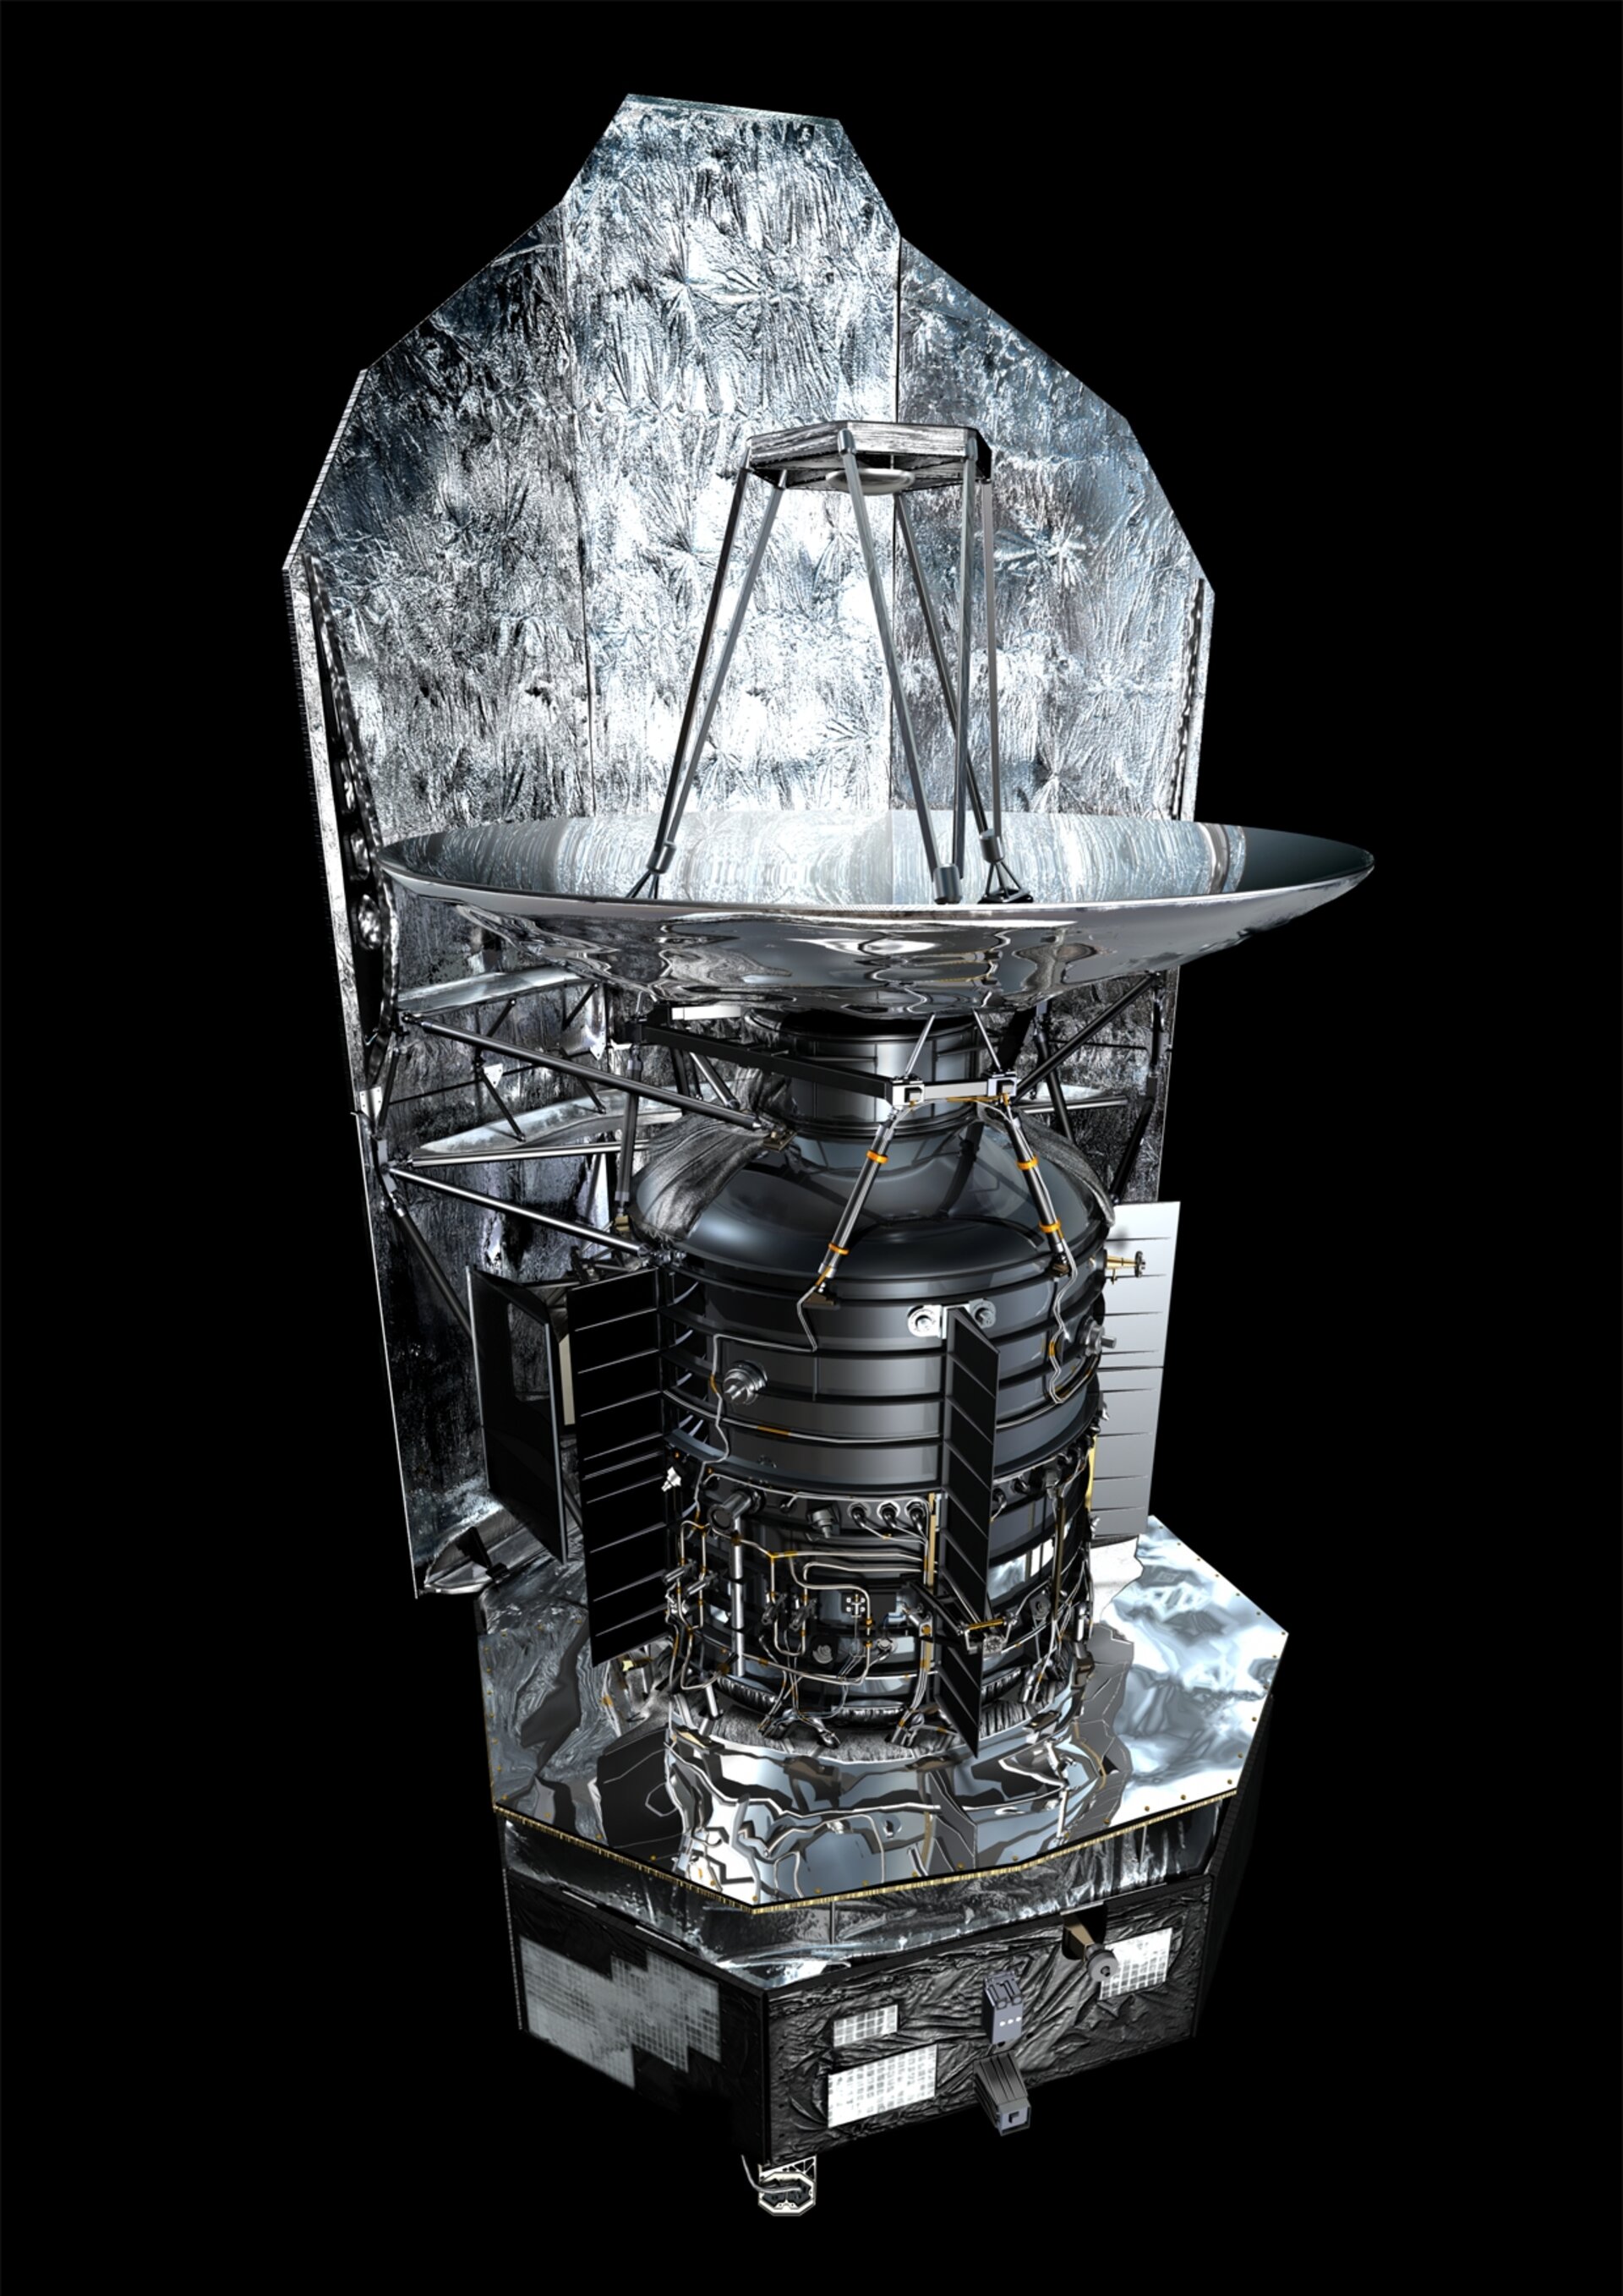 Herschel spacecraft artist's concept